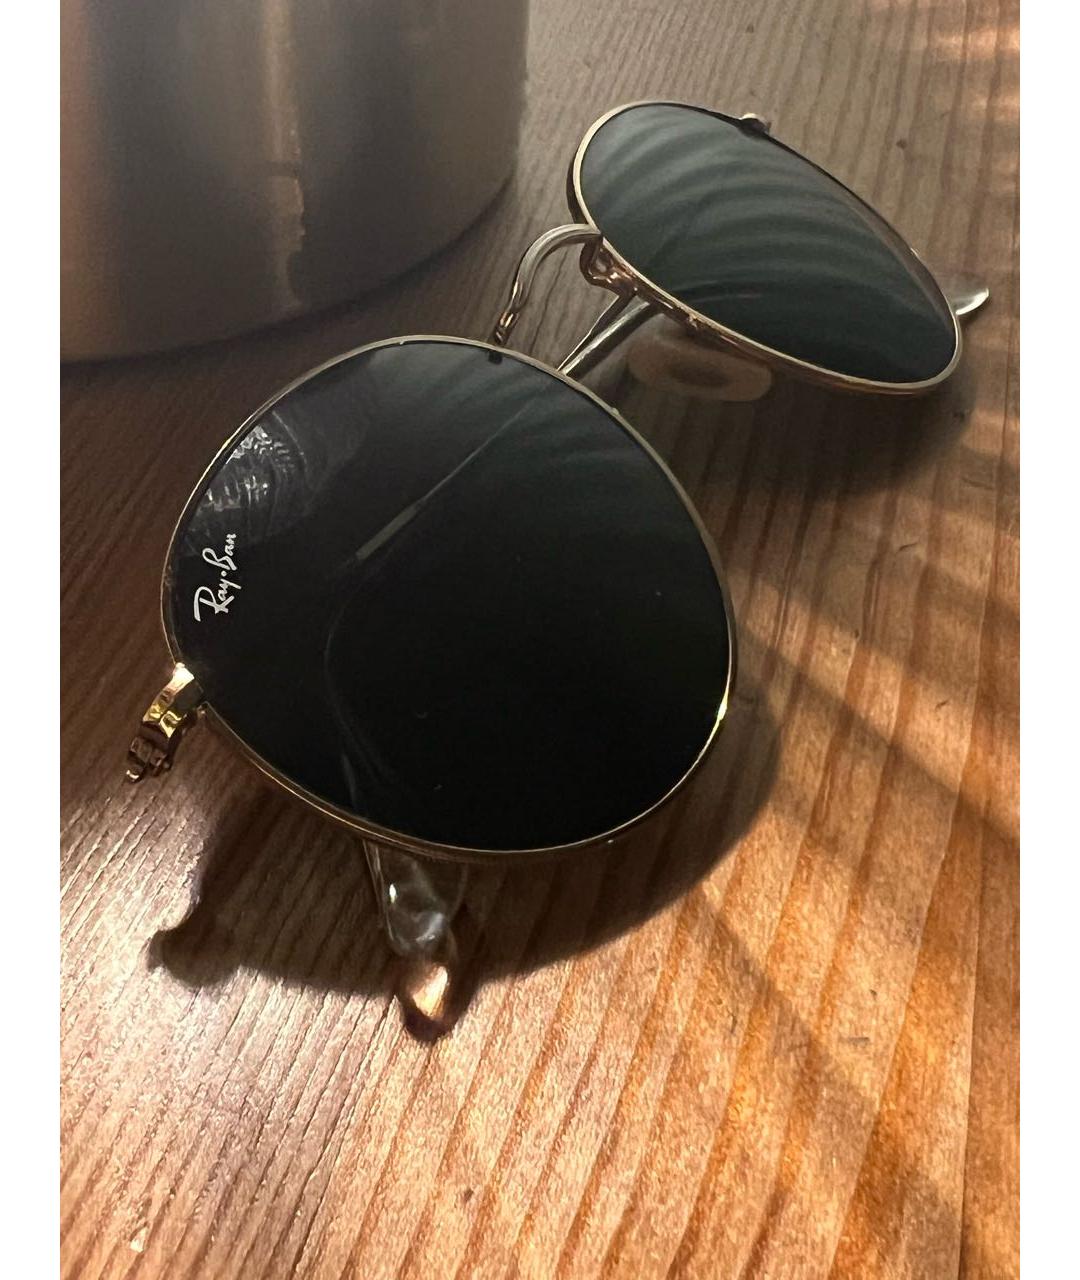 RAY BAN Золотые металлические солнцезащитные очки, фото 4